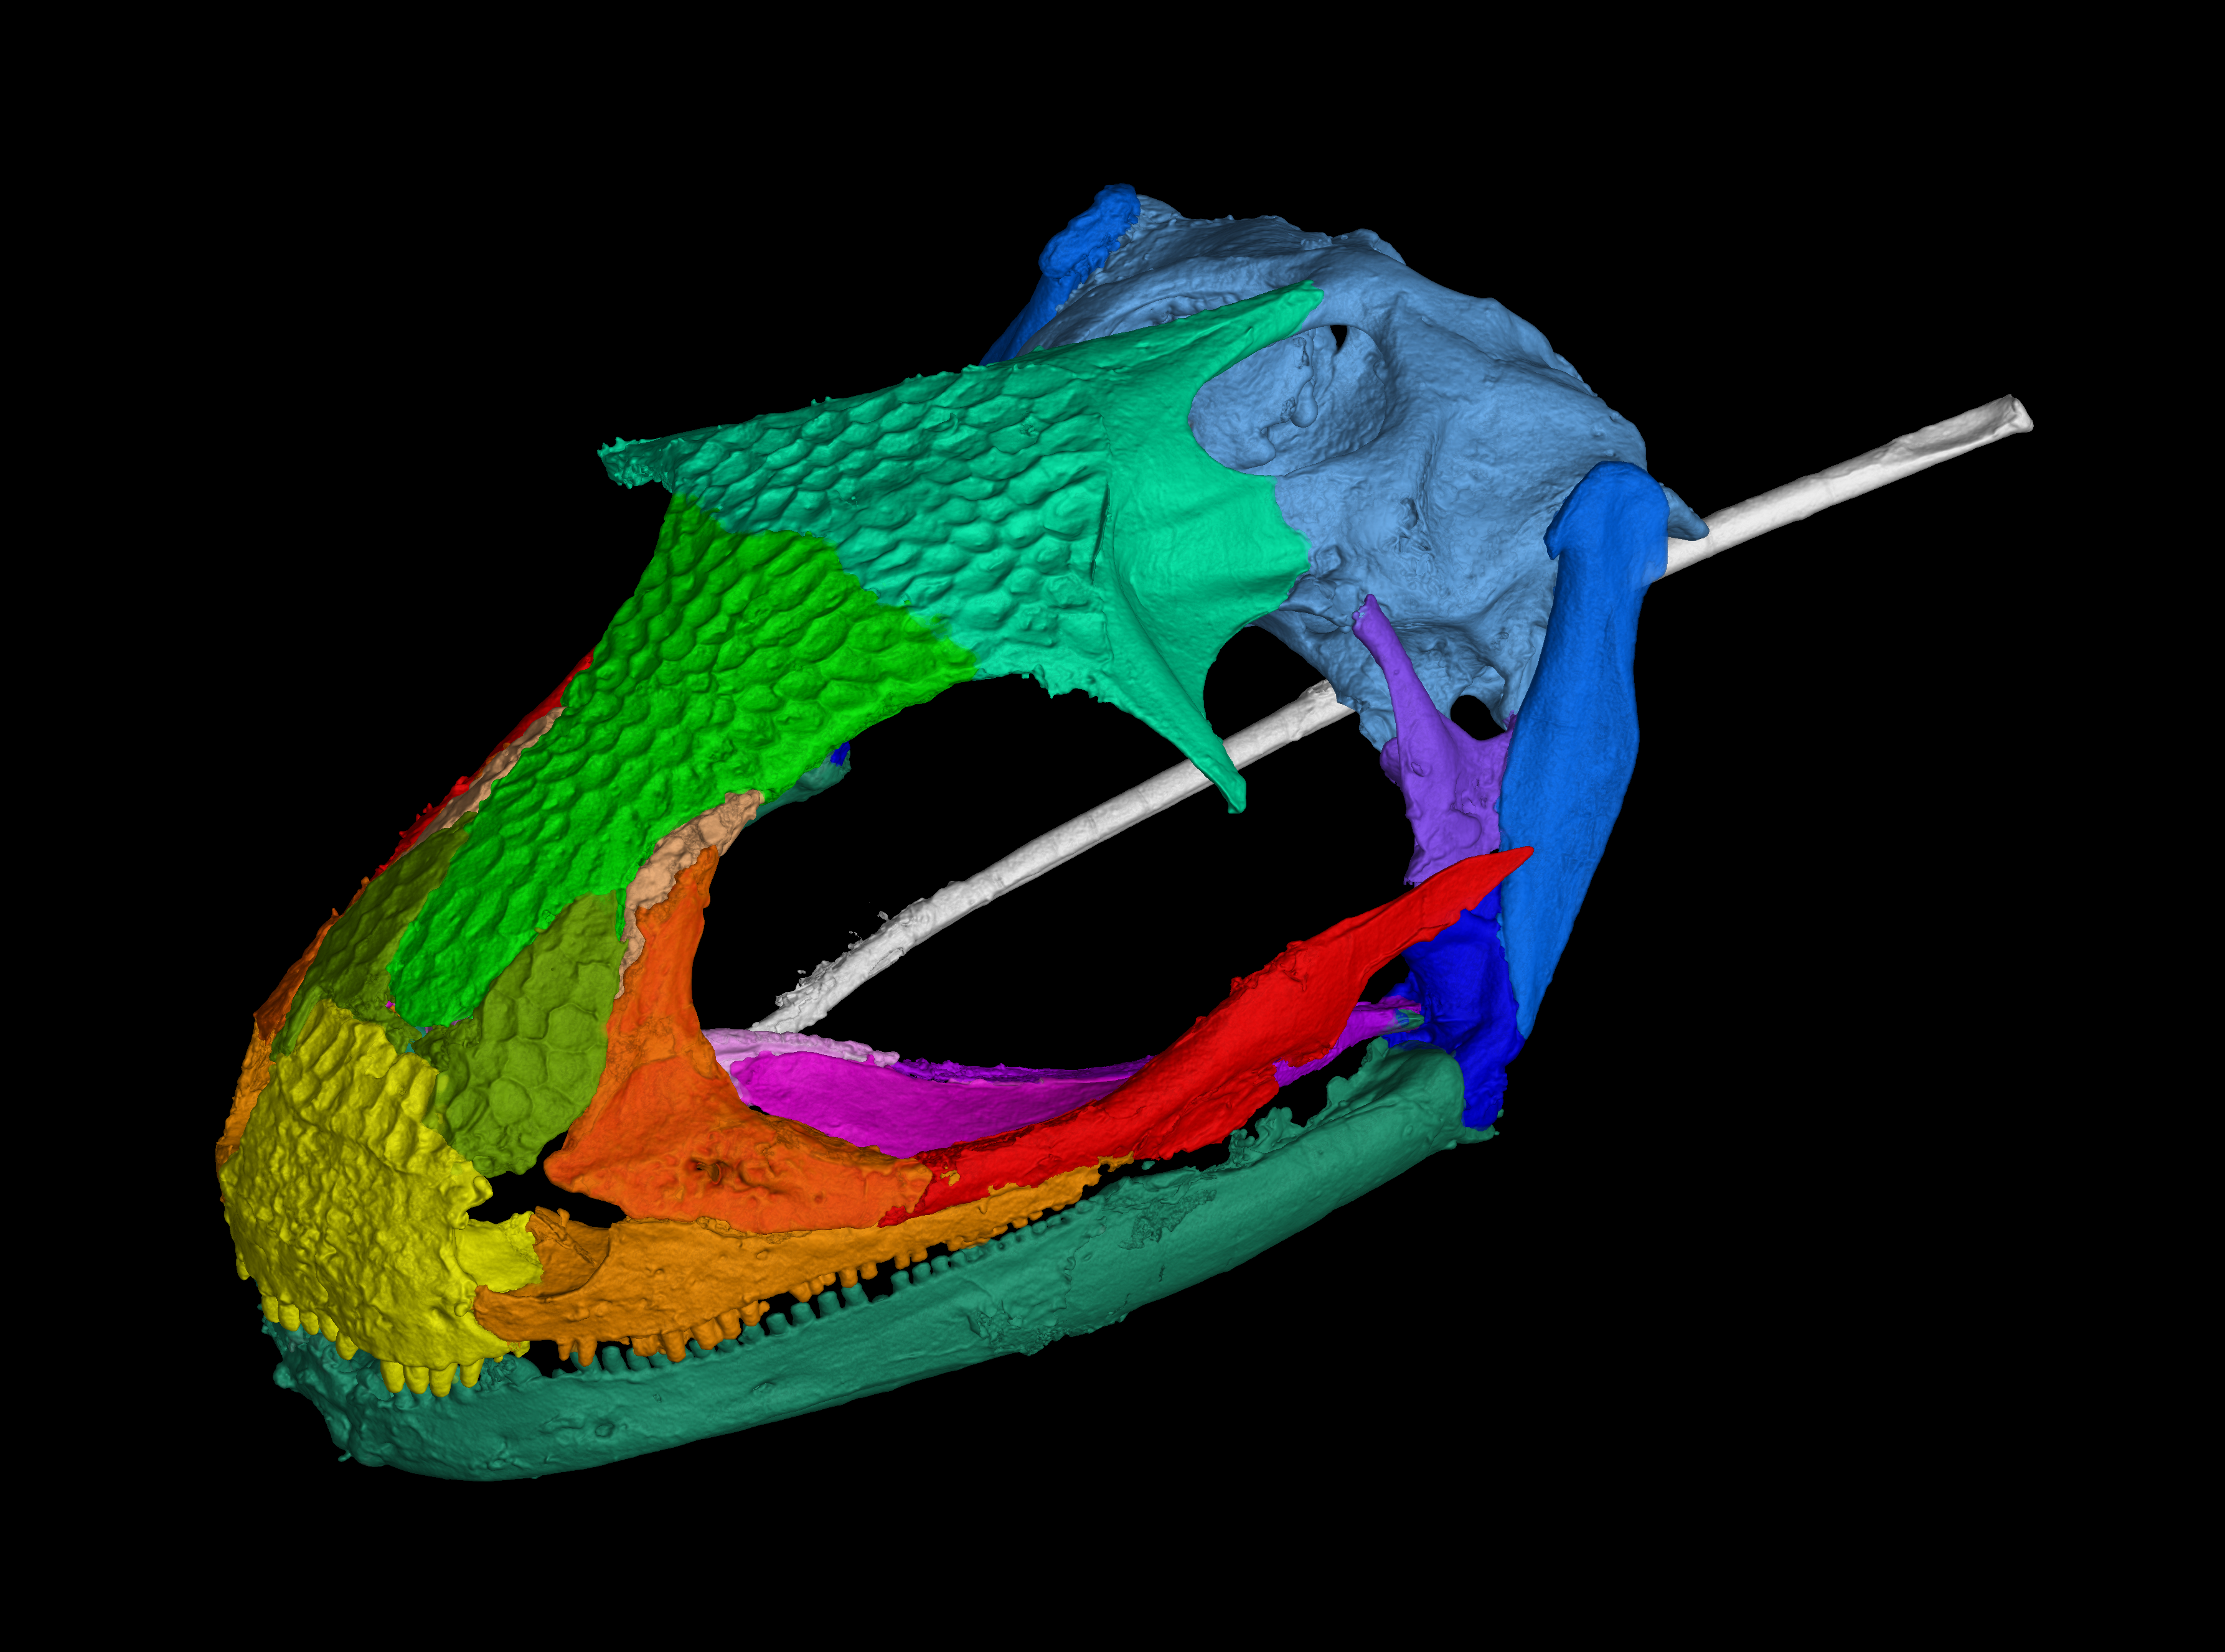 CT scan of Albanerpetontid skull